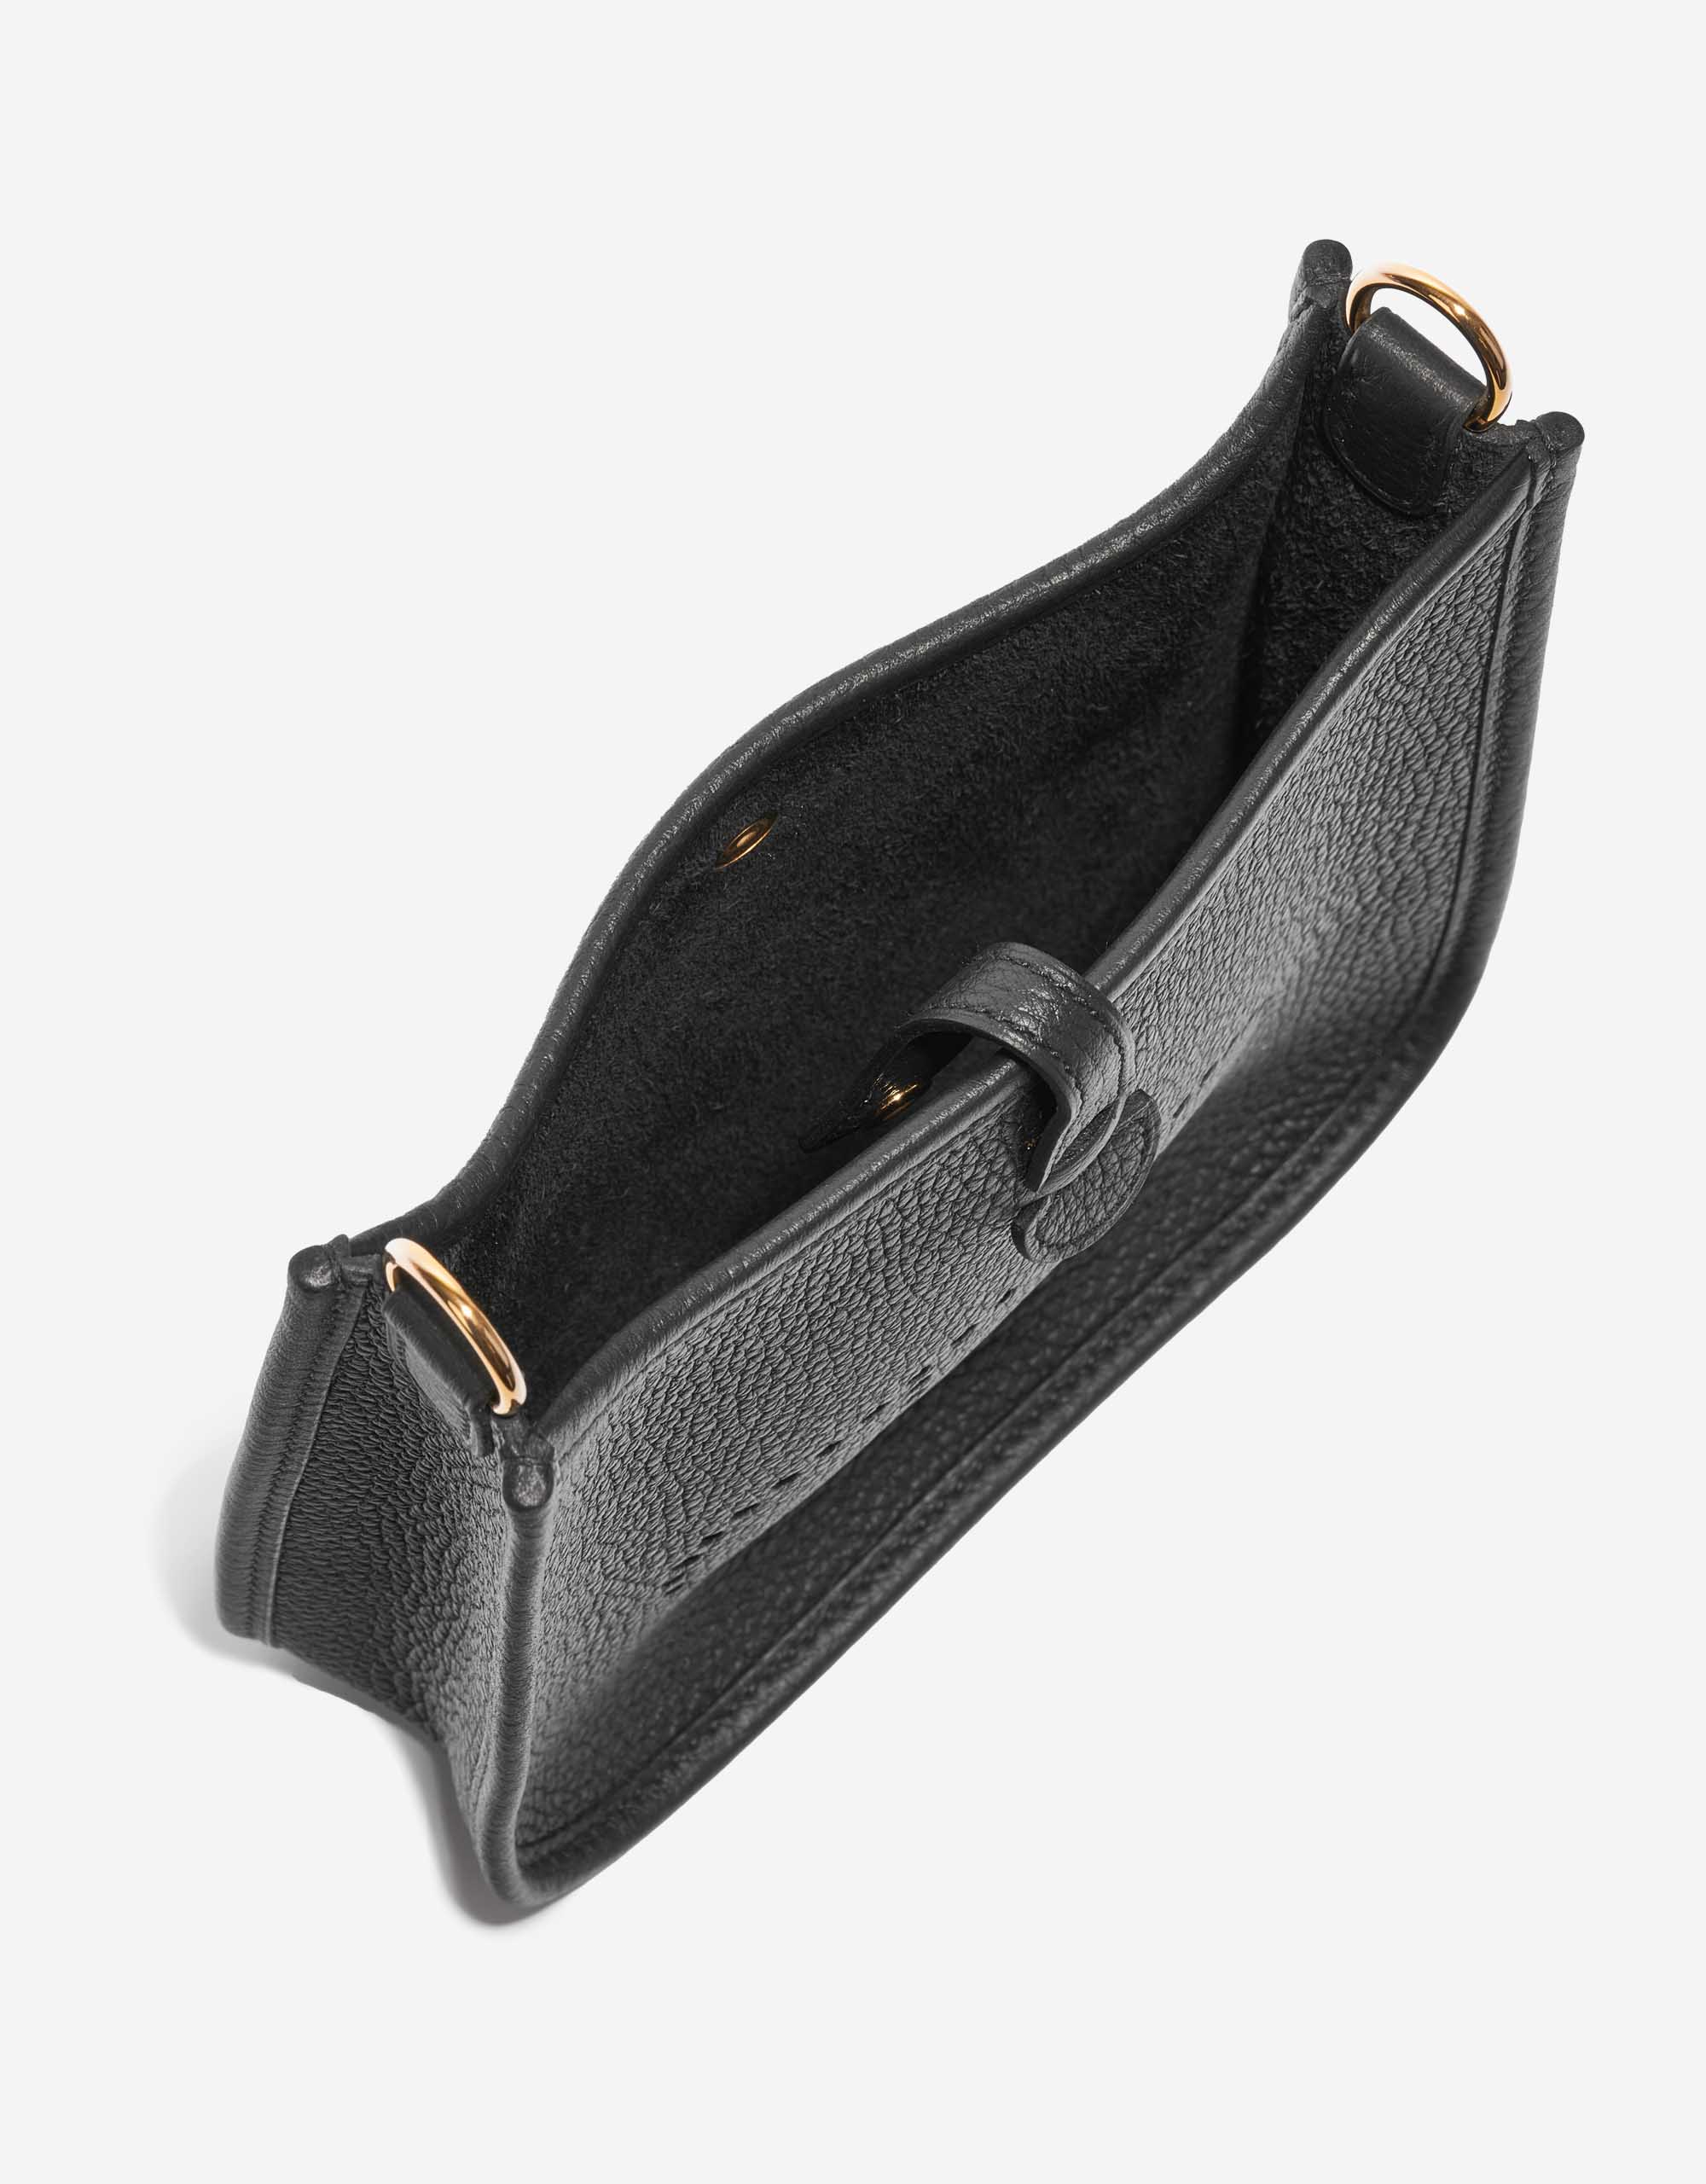 Pre-owned Hermès bag Evelyne 16 Taurillon Clemence Black Black Inside | Sell your designer bag on Saclab.com